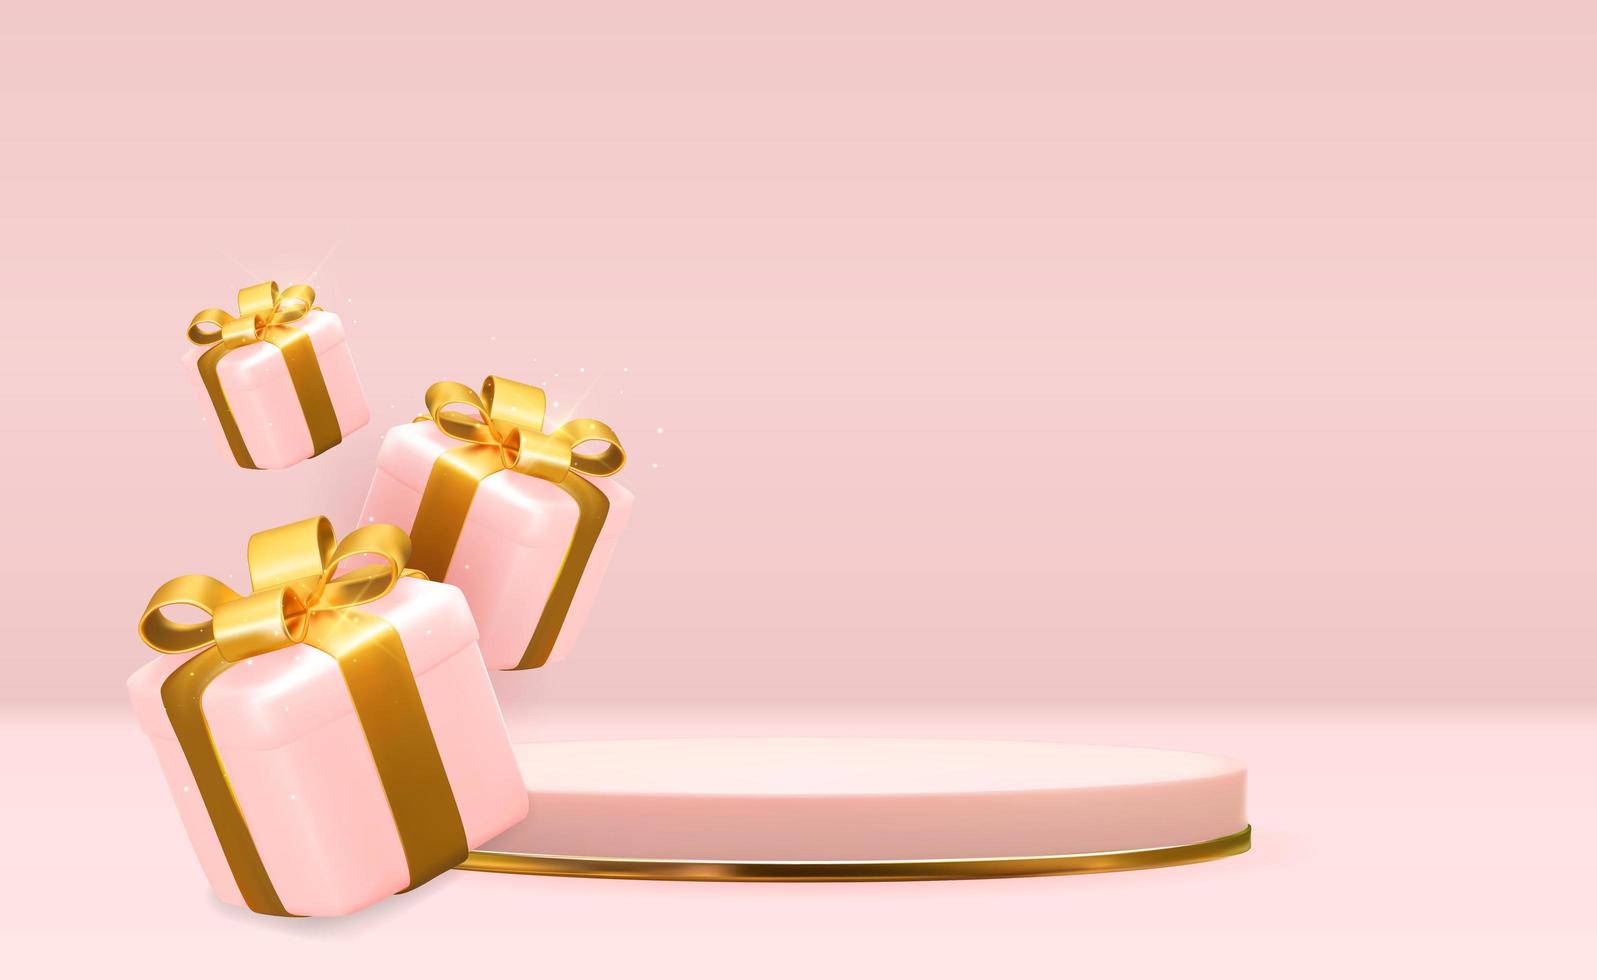 roséguld piedestal över rosa pastell naturlig bakgrund med 3d presentförpackning. trendig tom palldisplay för kosmetisk produktpresentation, modemagasin. kopiera utrymme vektor illustration